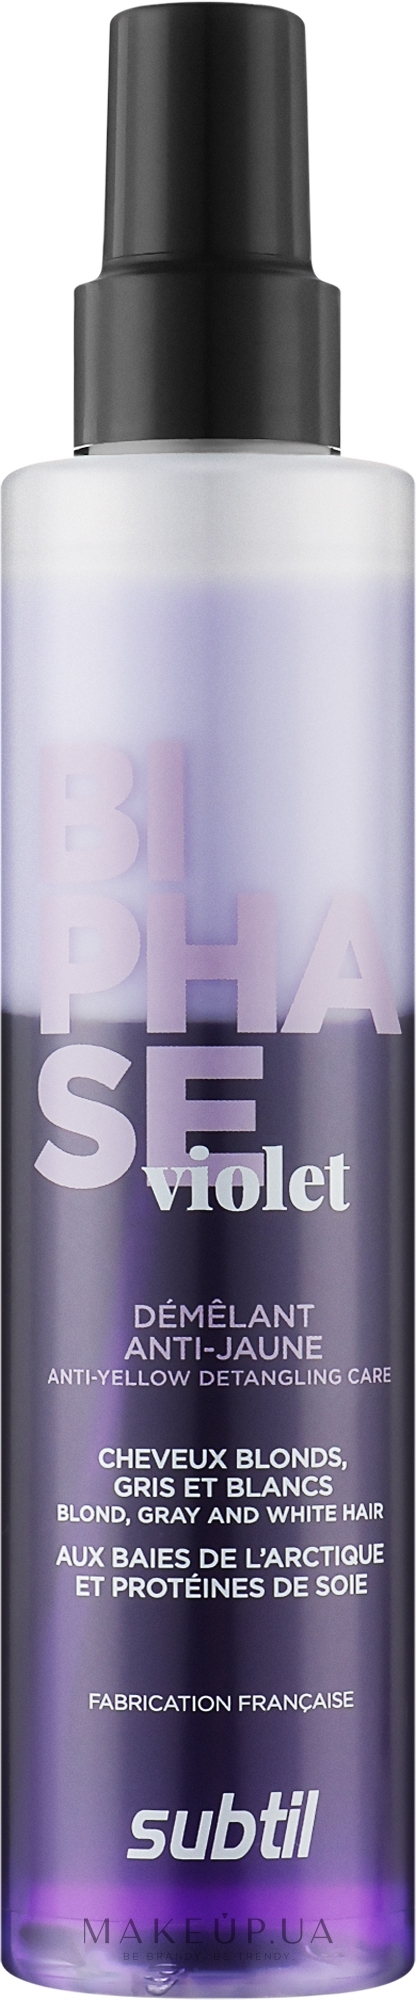 Фіолетовий спрей-кондиціонер для світлого волосся - Laboratoire Ducastel Subtil Biphase Violet — фото 200ml